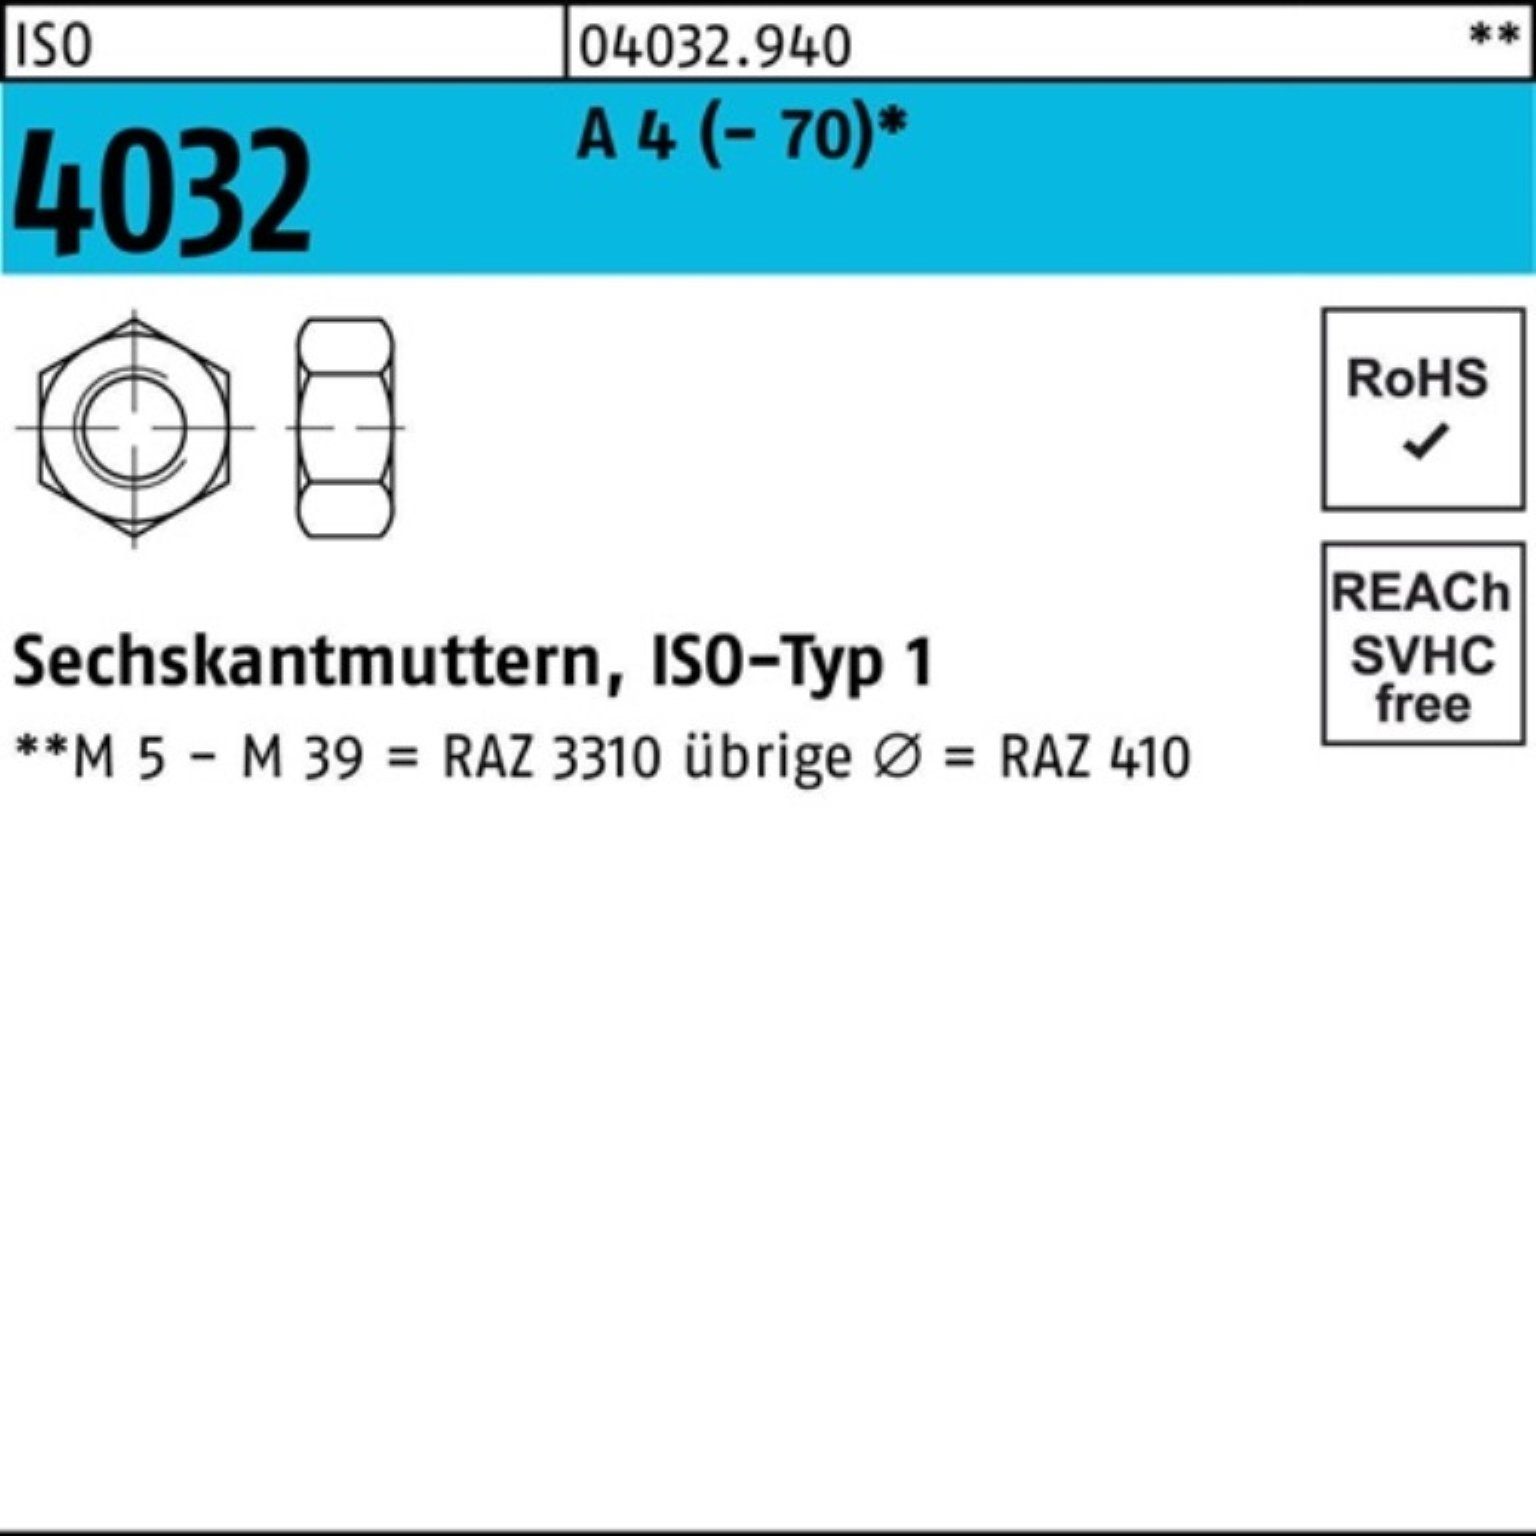 ISO A 4 - A M4 Sechskantmutter ISO 4032 100 Bufab Stück 7 Muttern Pack 4 4032 100er